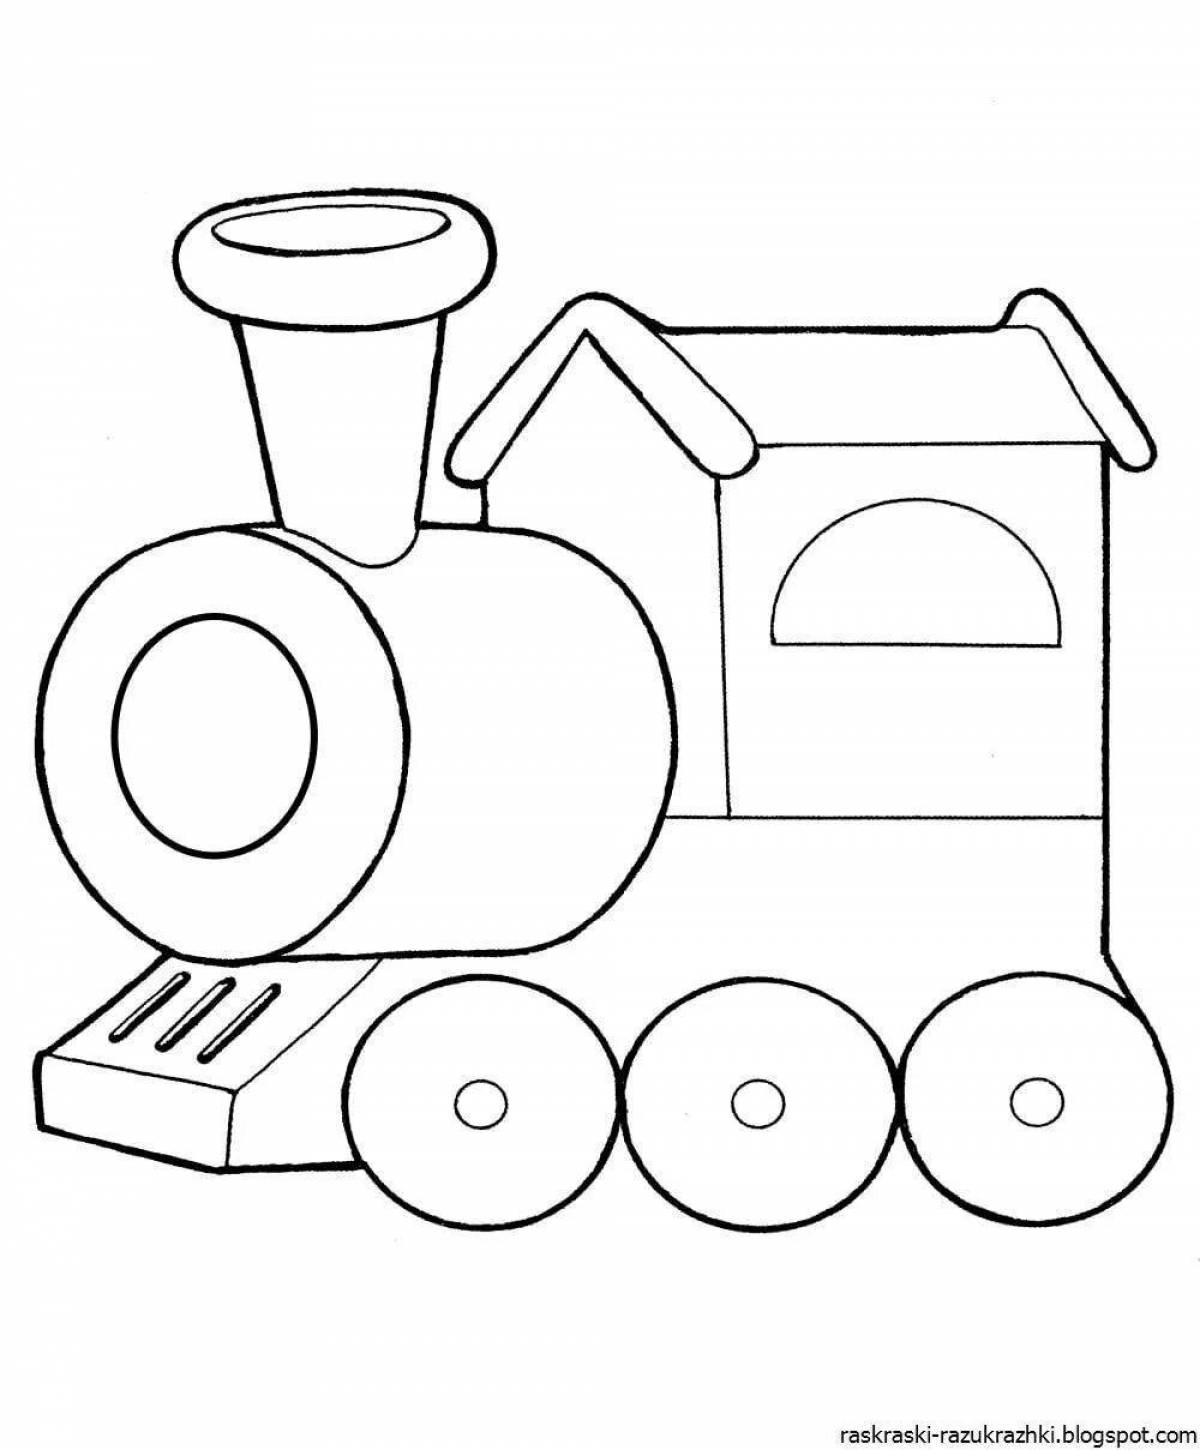 Восхитительная раскраска поезда для малышей 2-3 лет